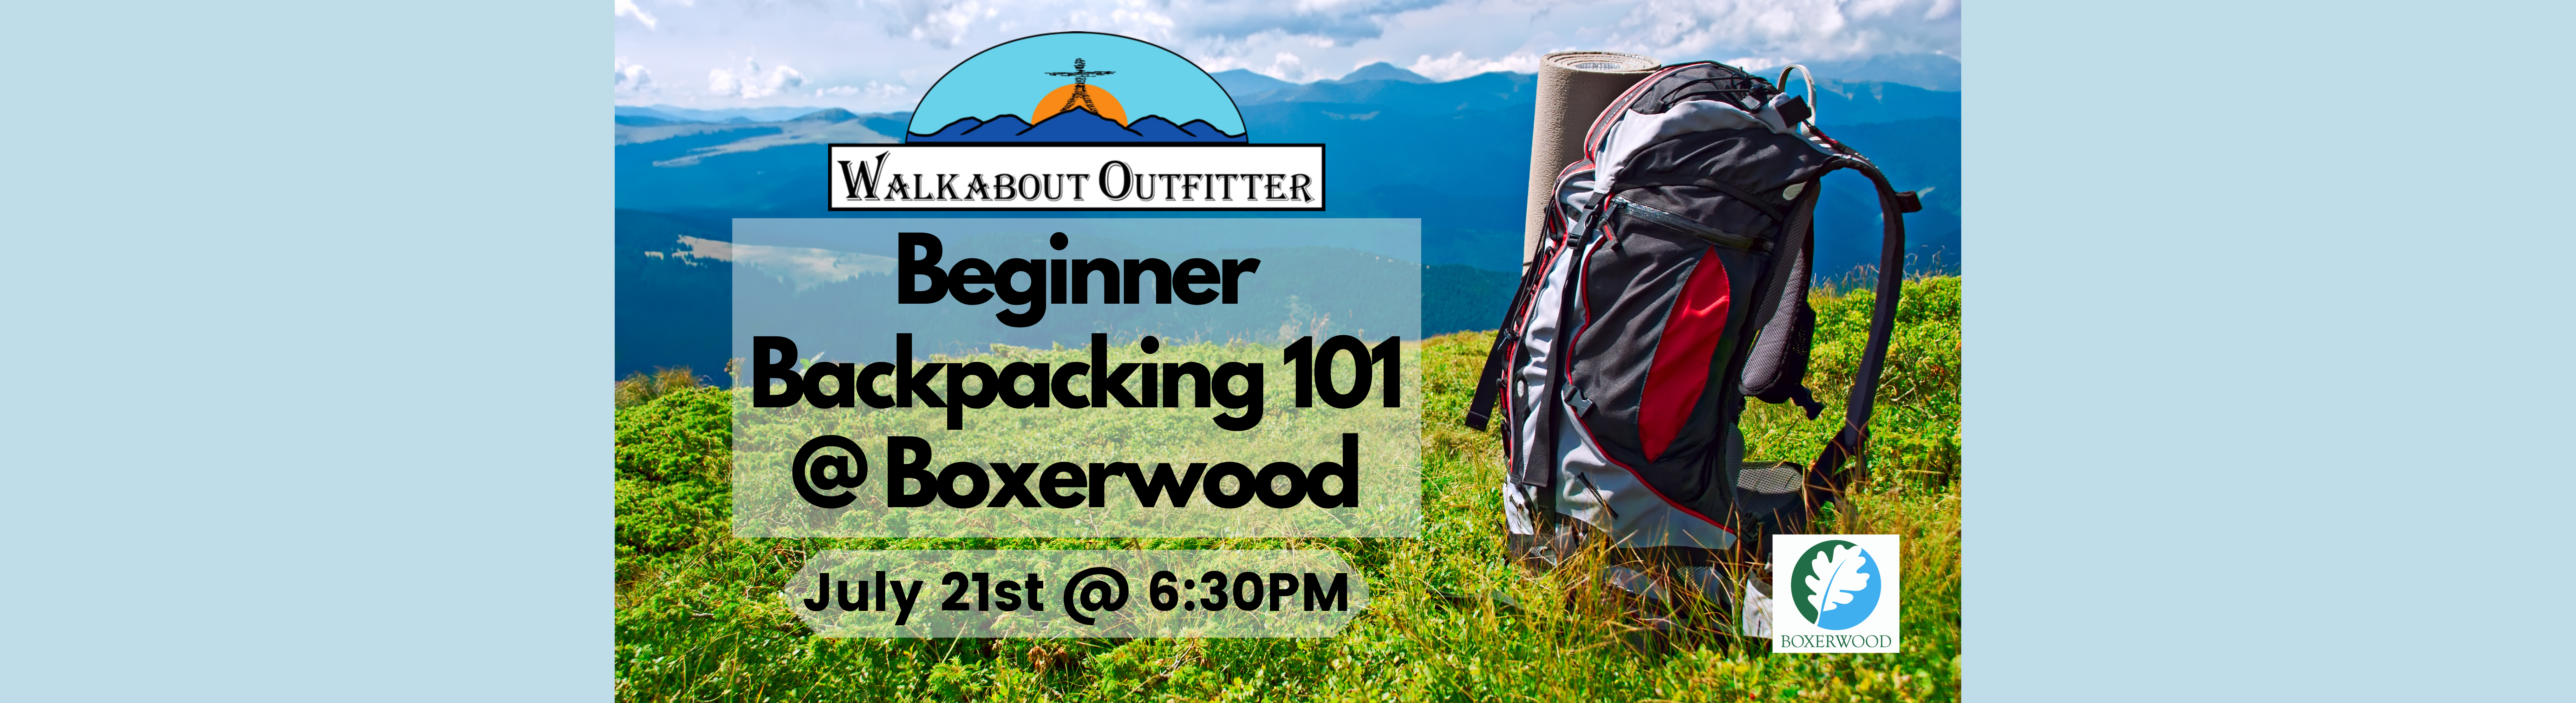 Beginner Backpacking 101 - July 21st @ Boxerwood - Lexington, VA